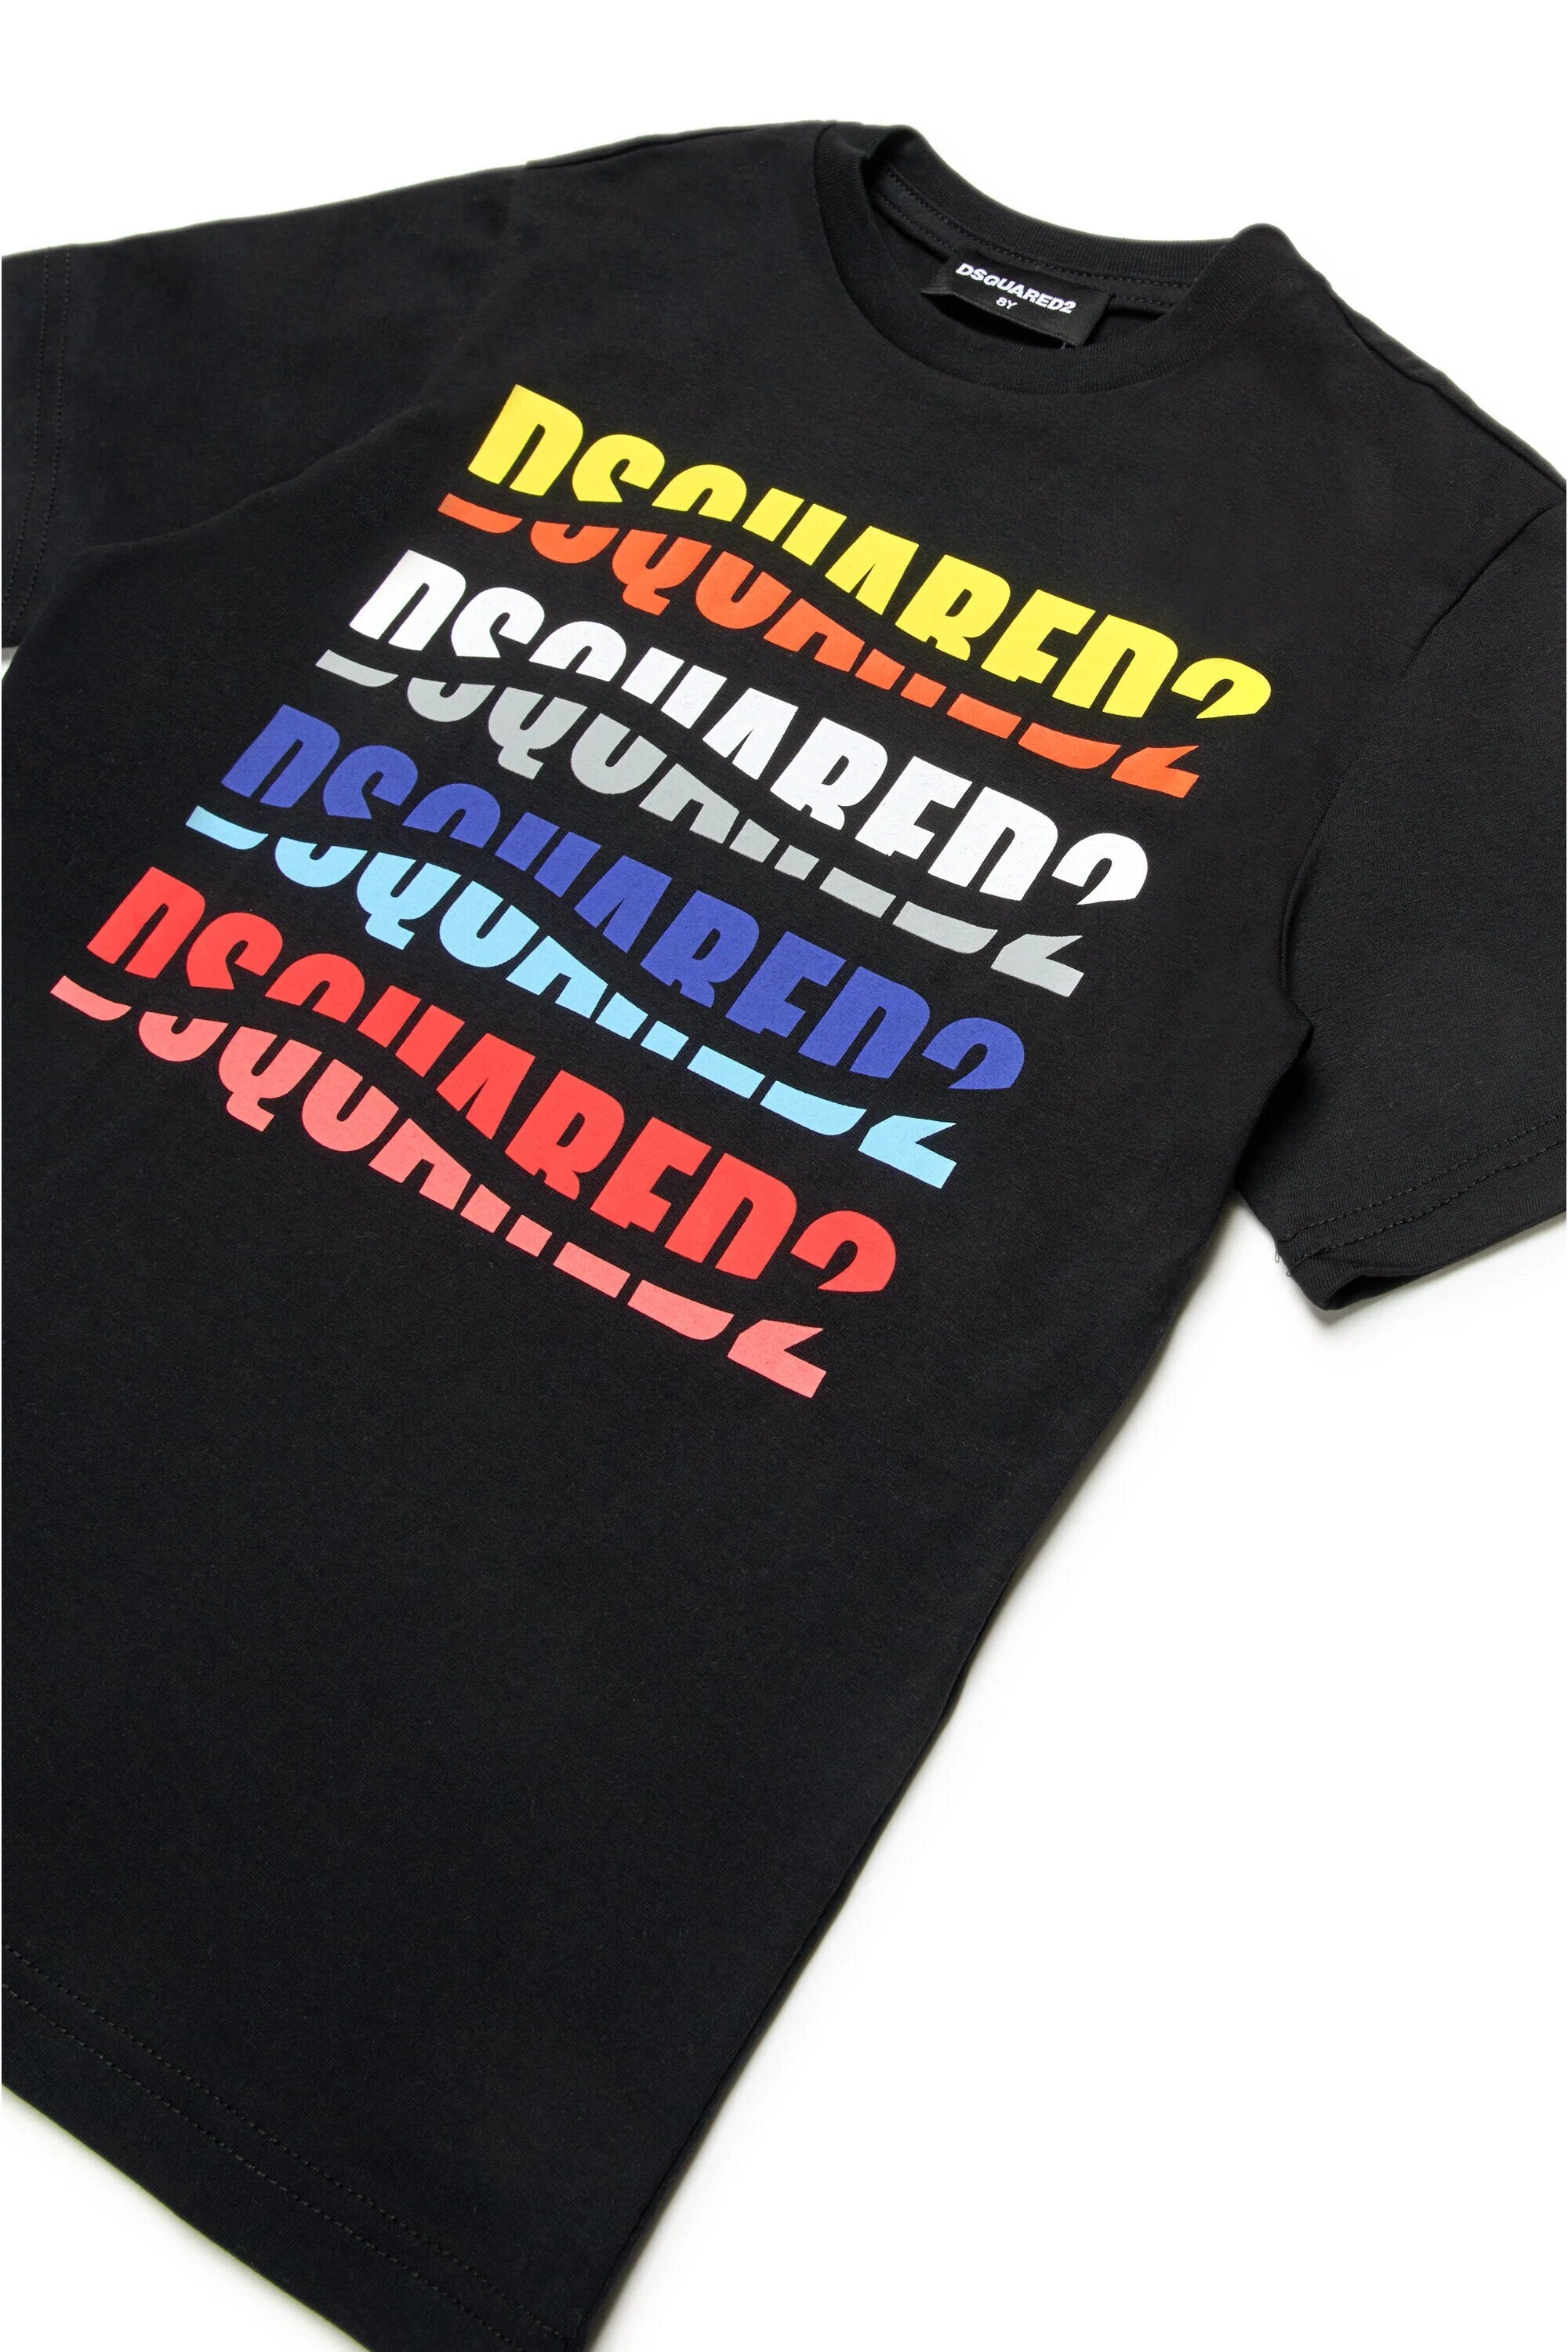 DSQUARED2-T-Shirt Unisex Bambino Relax Logo-Nero